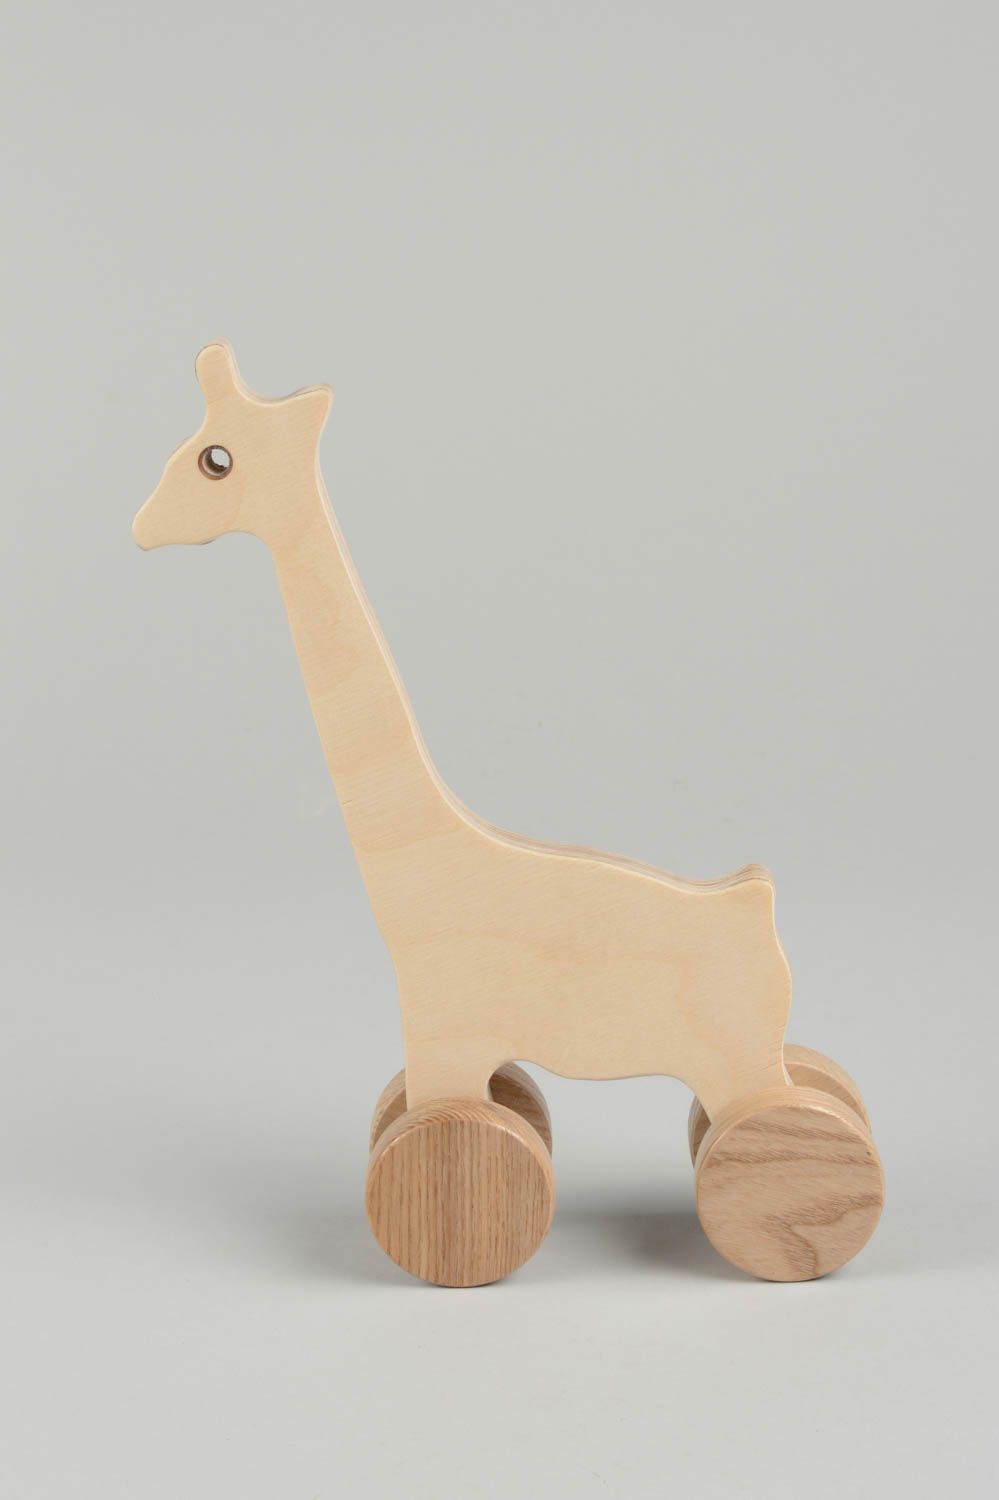 Игрушка ручной работы игрушка из дерева в виде жирафа игрушка каталка небольшая фото 4